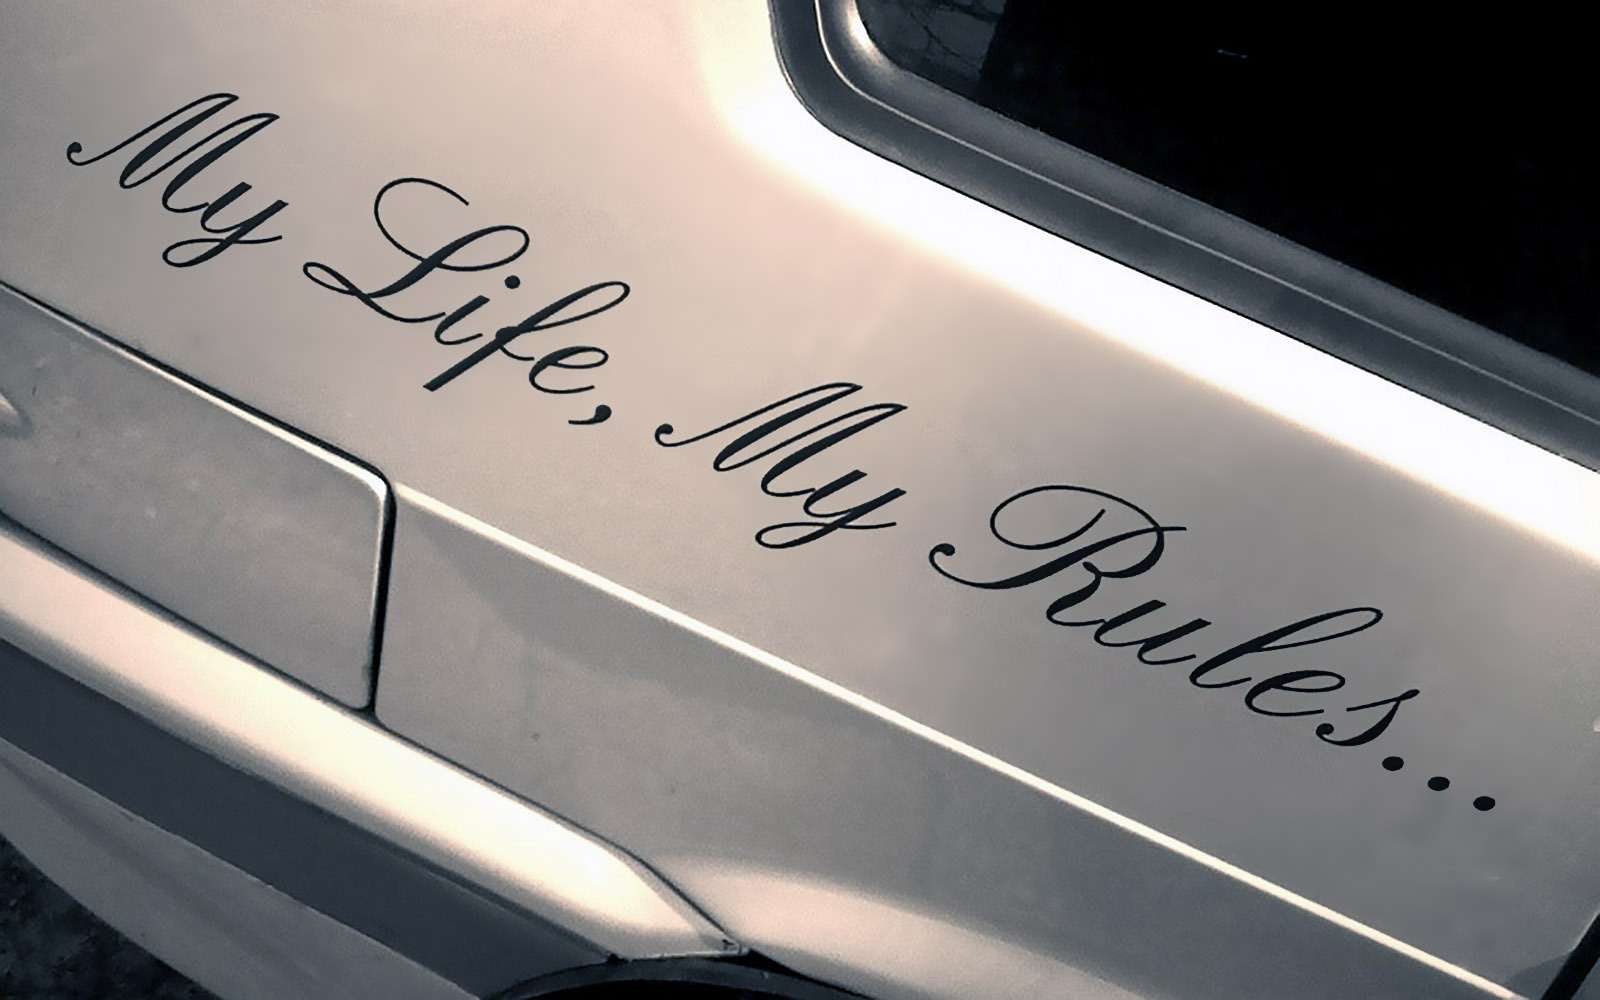 My life car. Наклейки на авто my Life my Rules. My Life my Rules наклейка на машину. Красивые надписи на машину. Наклейка на машину май лайф май рулез.